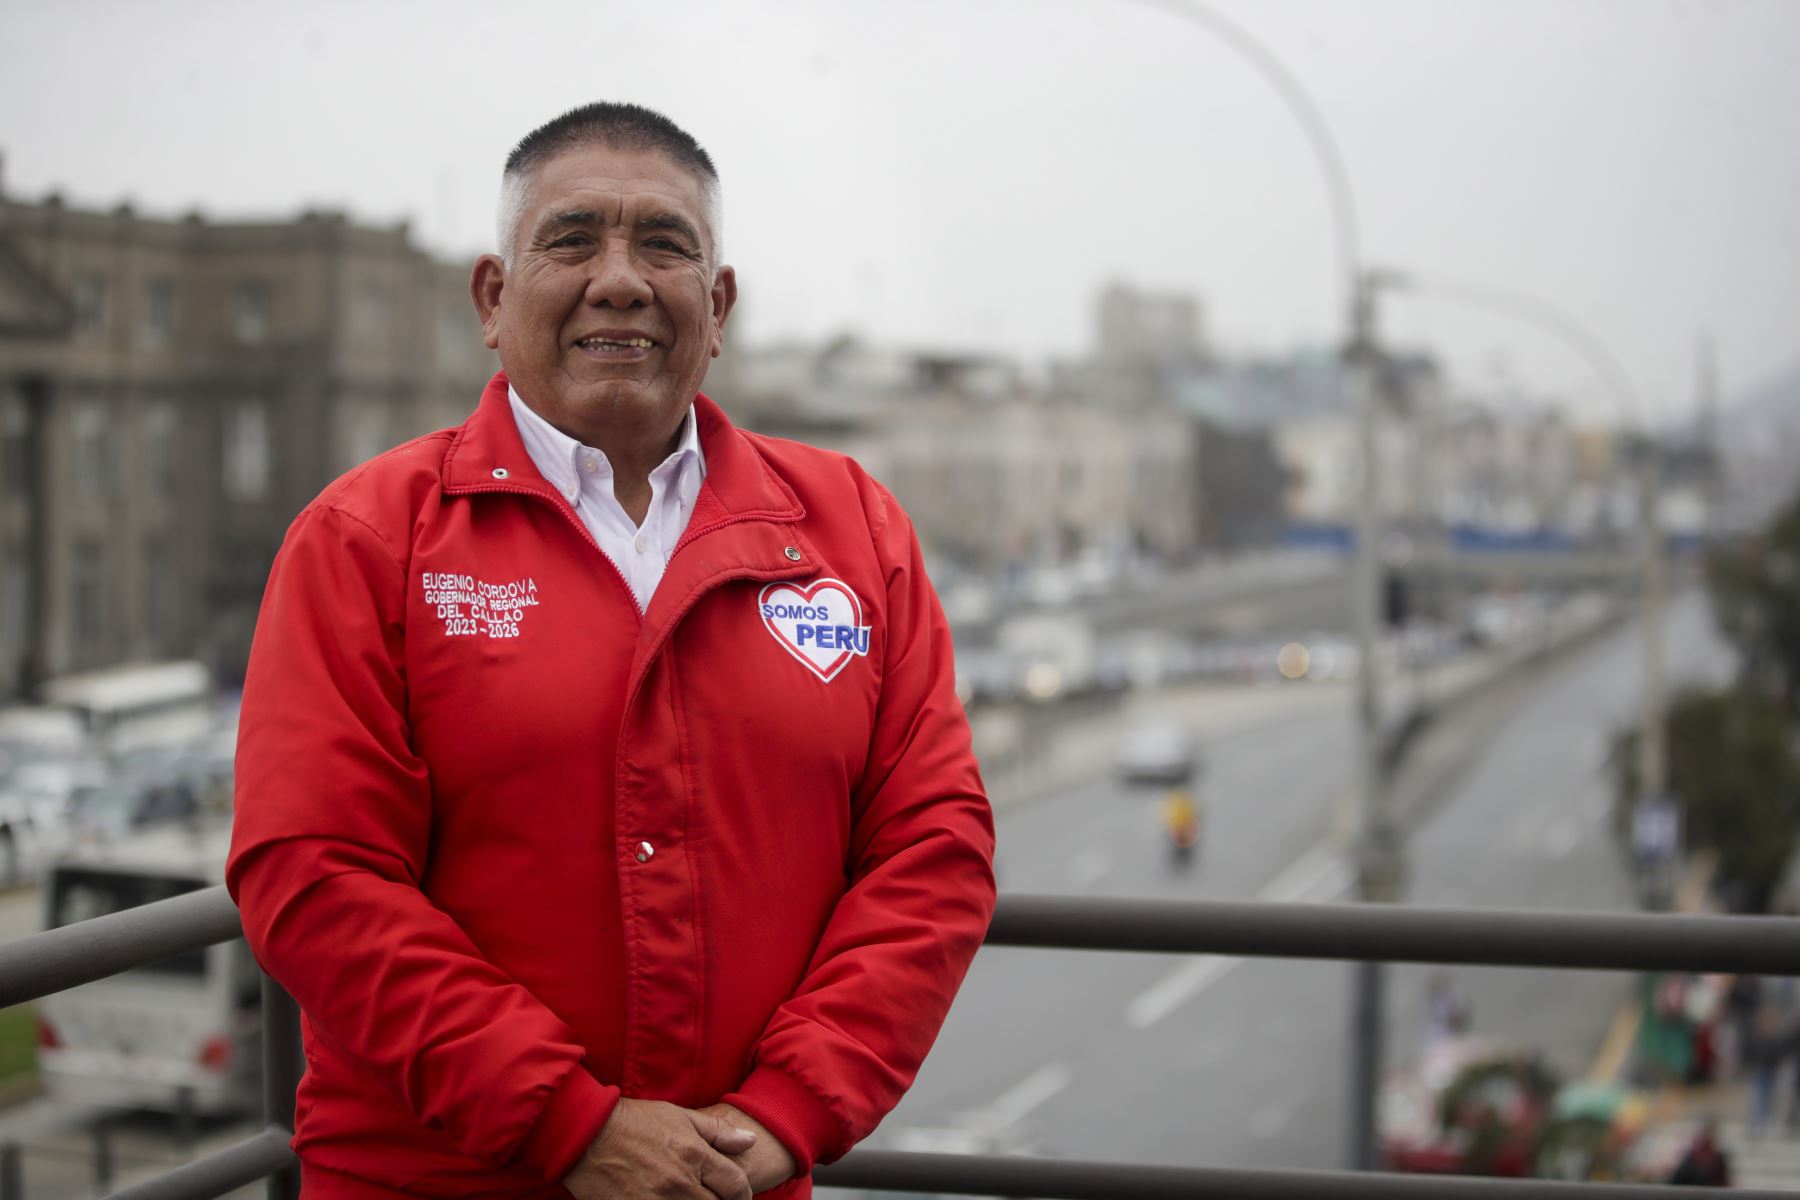 Entrevista a  Eugenio Córdova, candidato al Gobierno Regional del Callao por Somos Perú para Andina Canal Online.
Foto: ANDINA/Juan Carlos Guzmán Negrini